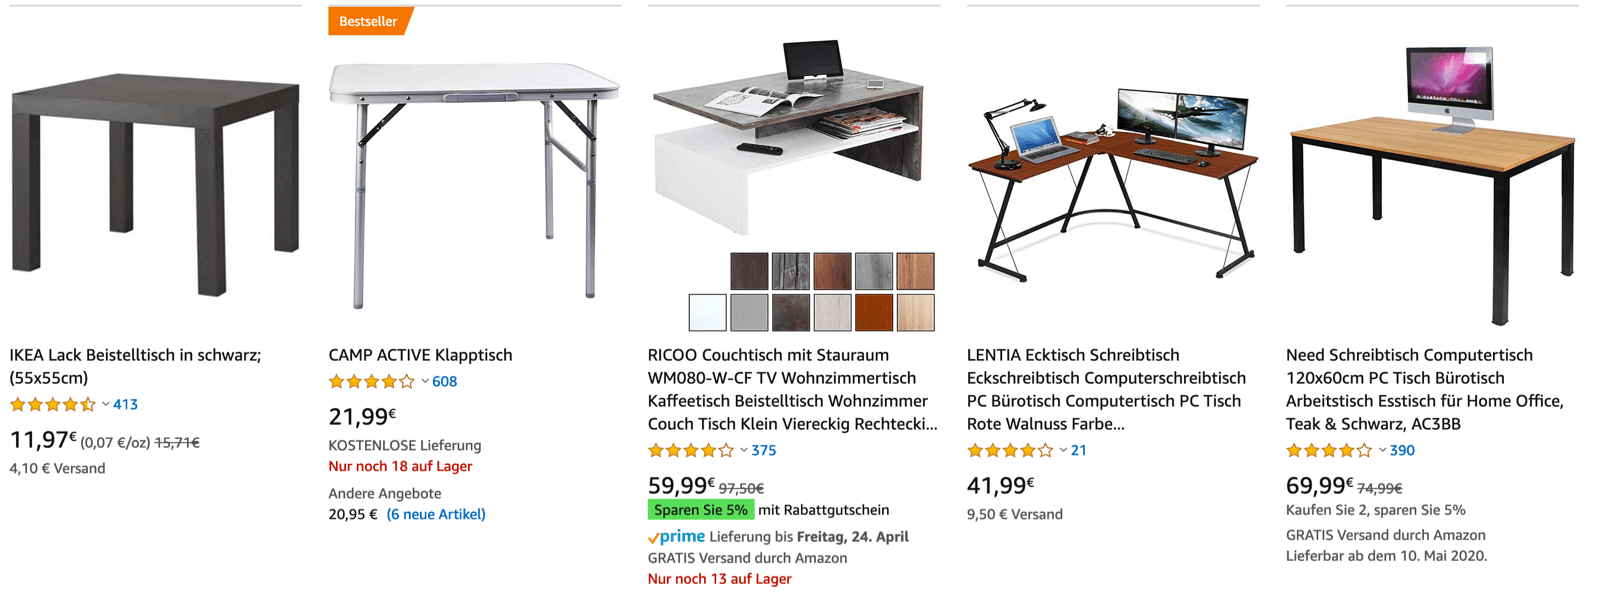 Amazon SEO Kurs - Abbildung von Tischen auf Amazon als Suchergebnis auf dem Desktop